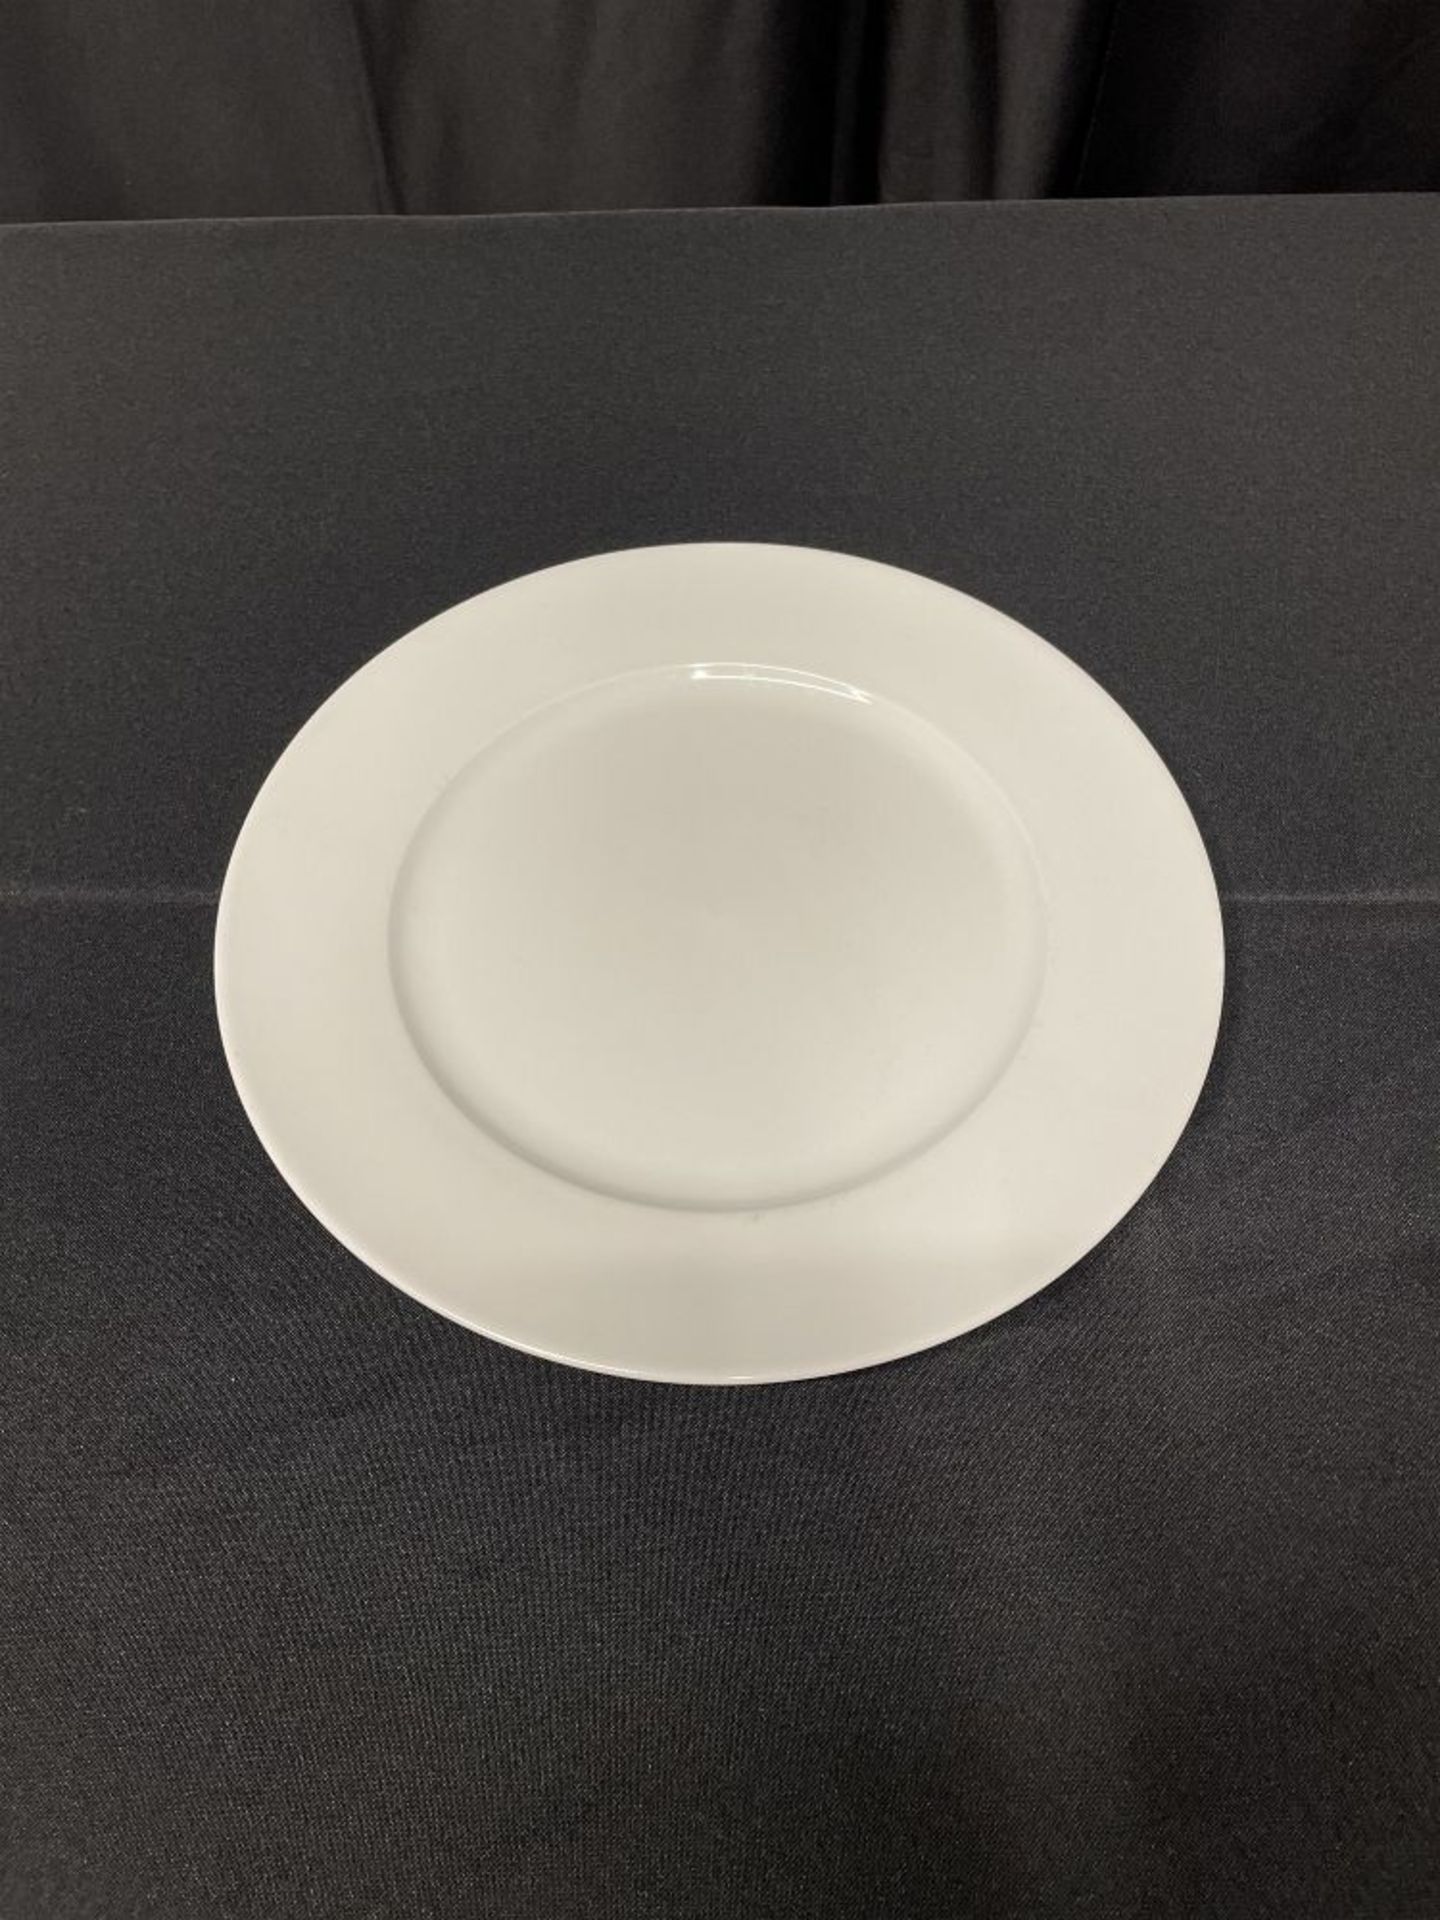 WHITE ROUND DINNER PLATE 10 3/4"